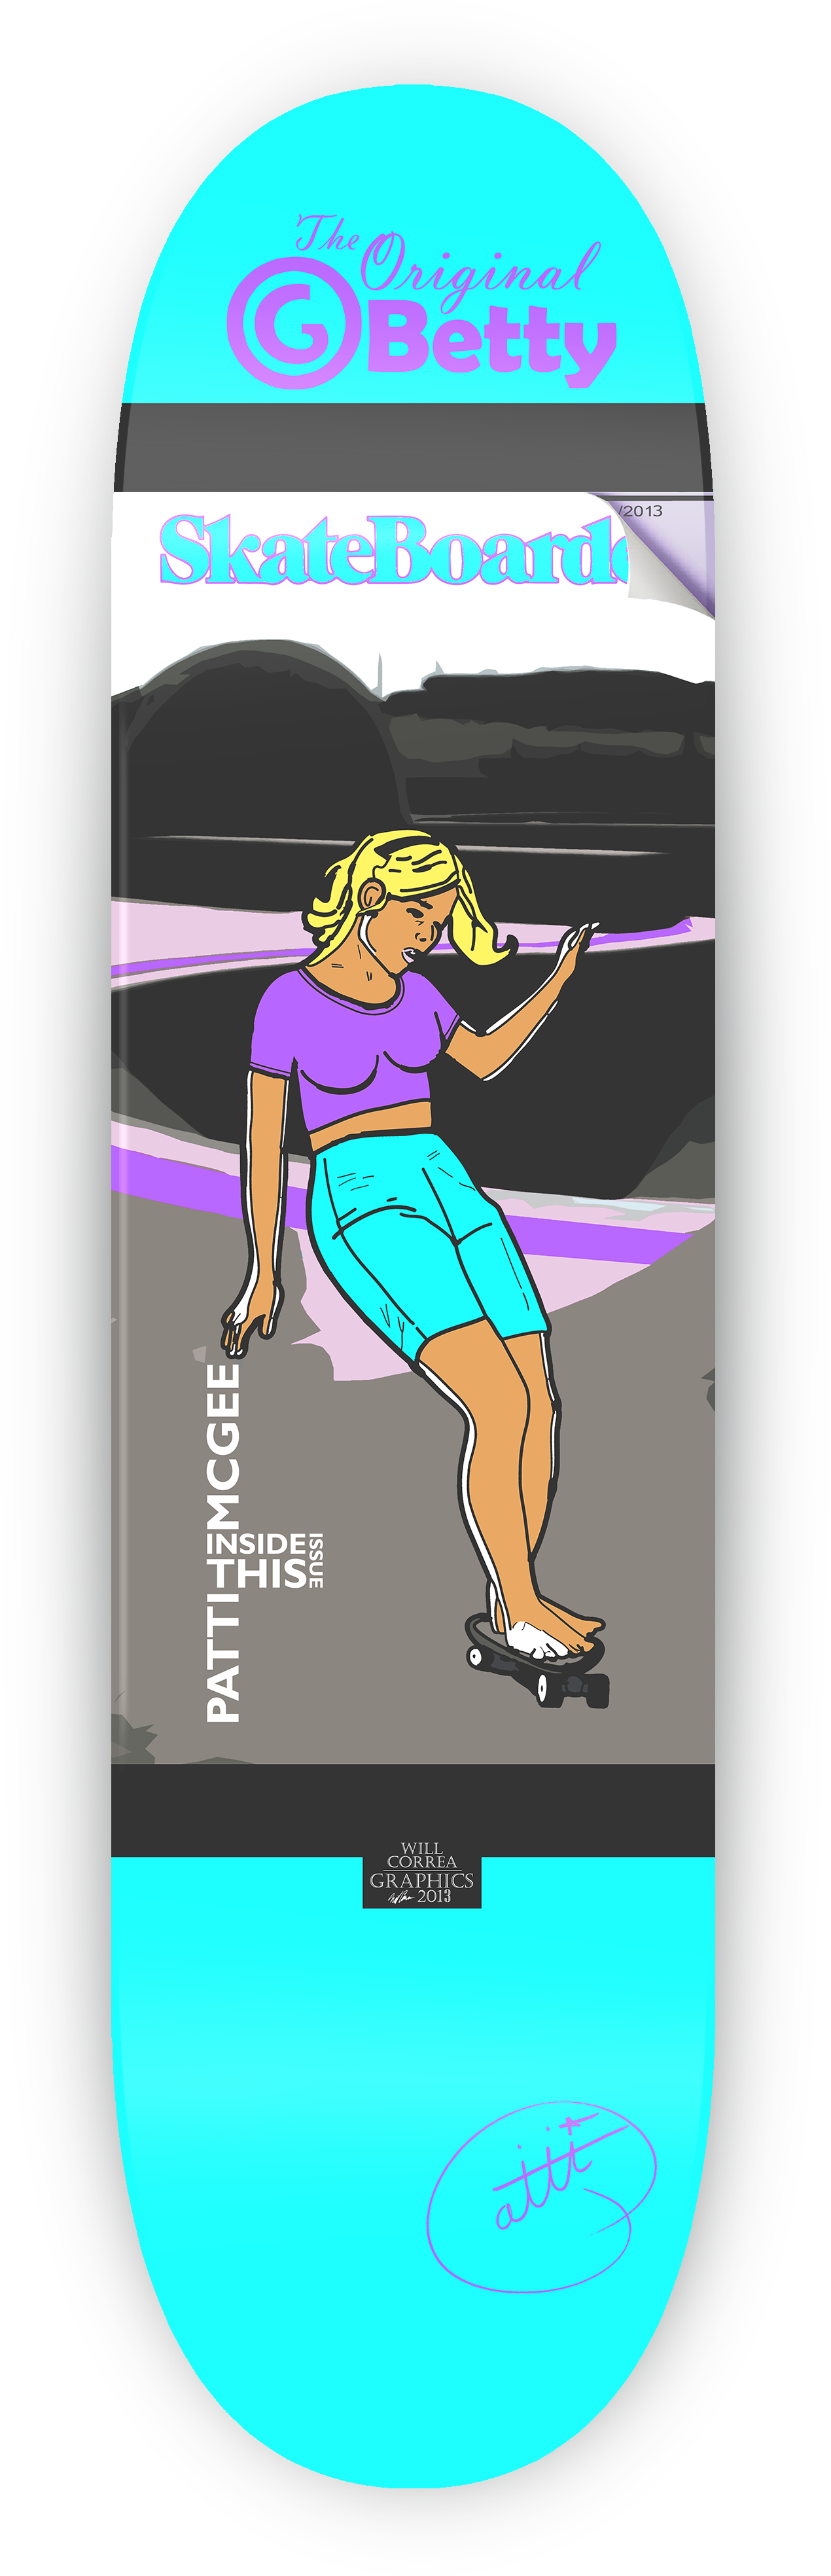 skate clipart skateboard deck